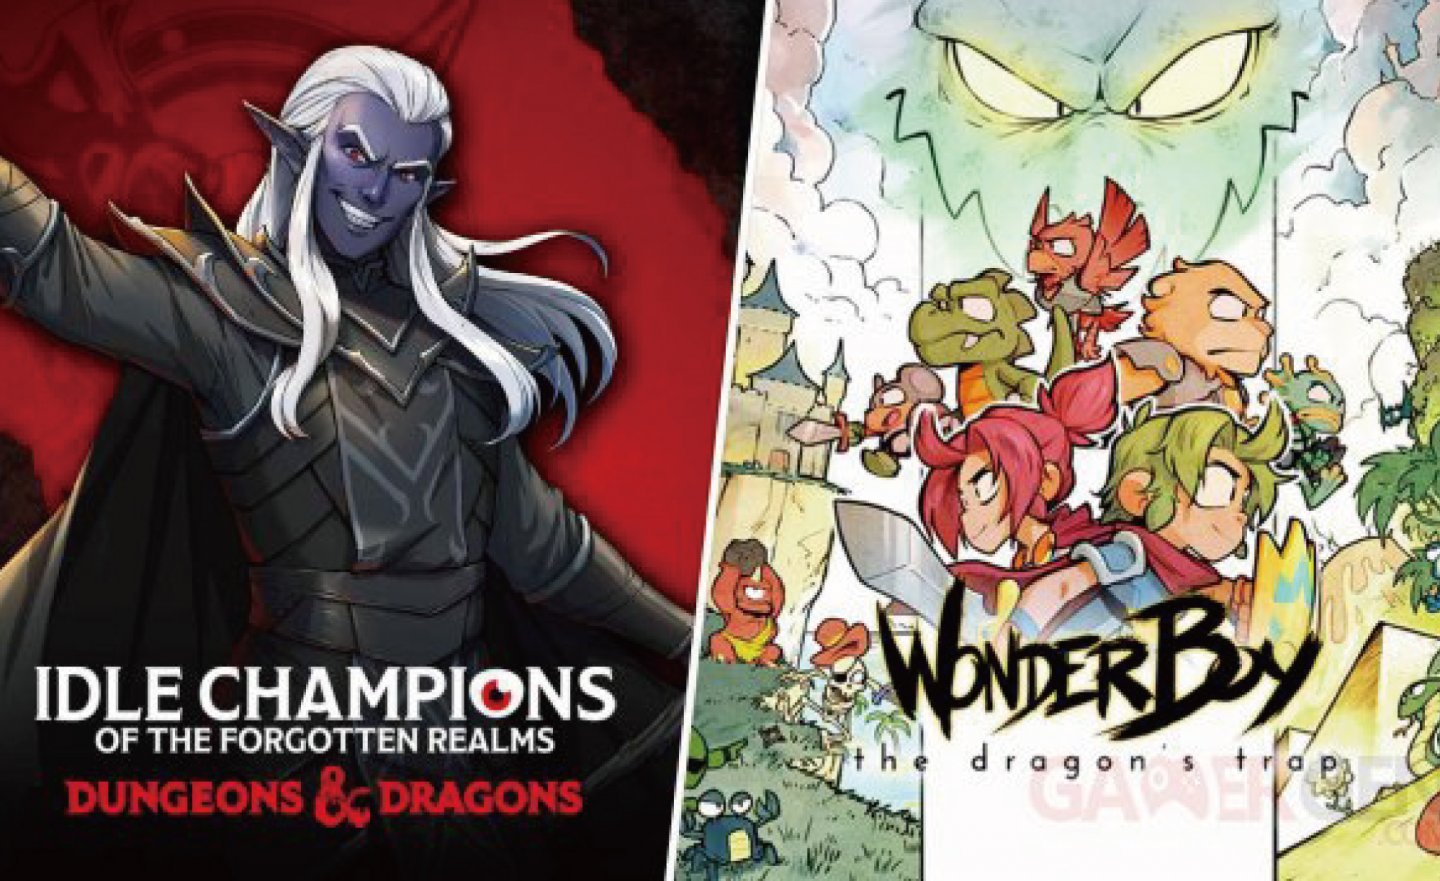 【限時免費】《Wonder Boy: The Dragon’s Trap》與《Idle Champions of the Forgotten Realms》放送中，快搶在 2022 年 7 月 21 日 23:00 前領取